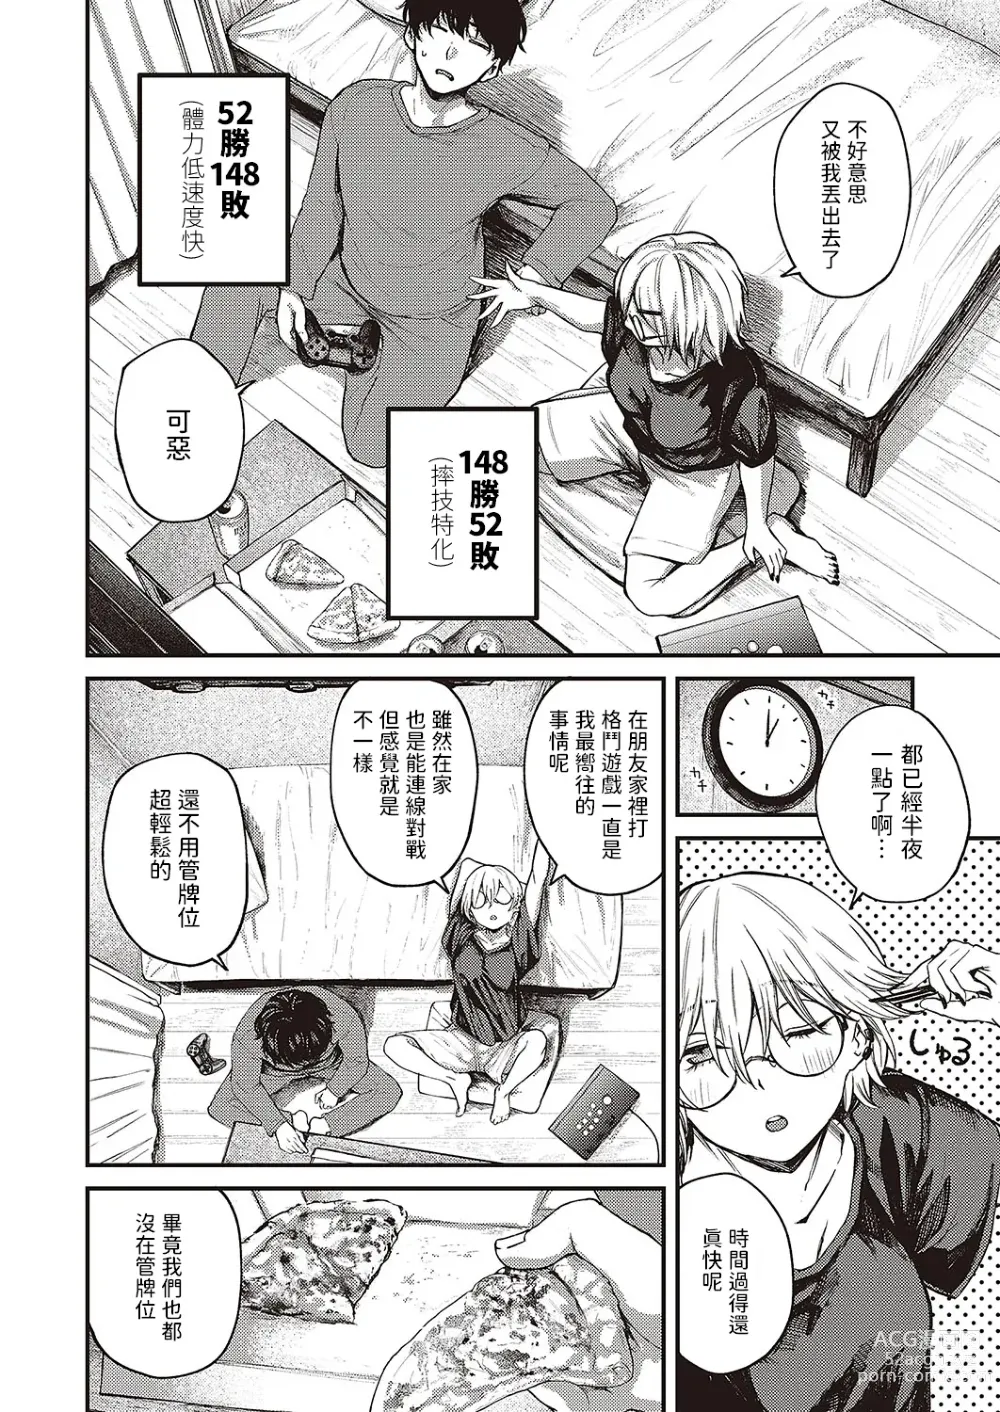 Page 6 of manga Tooriame